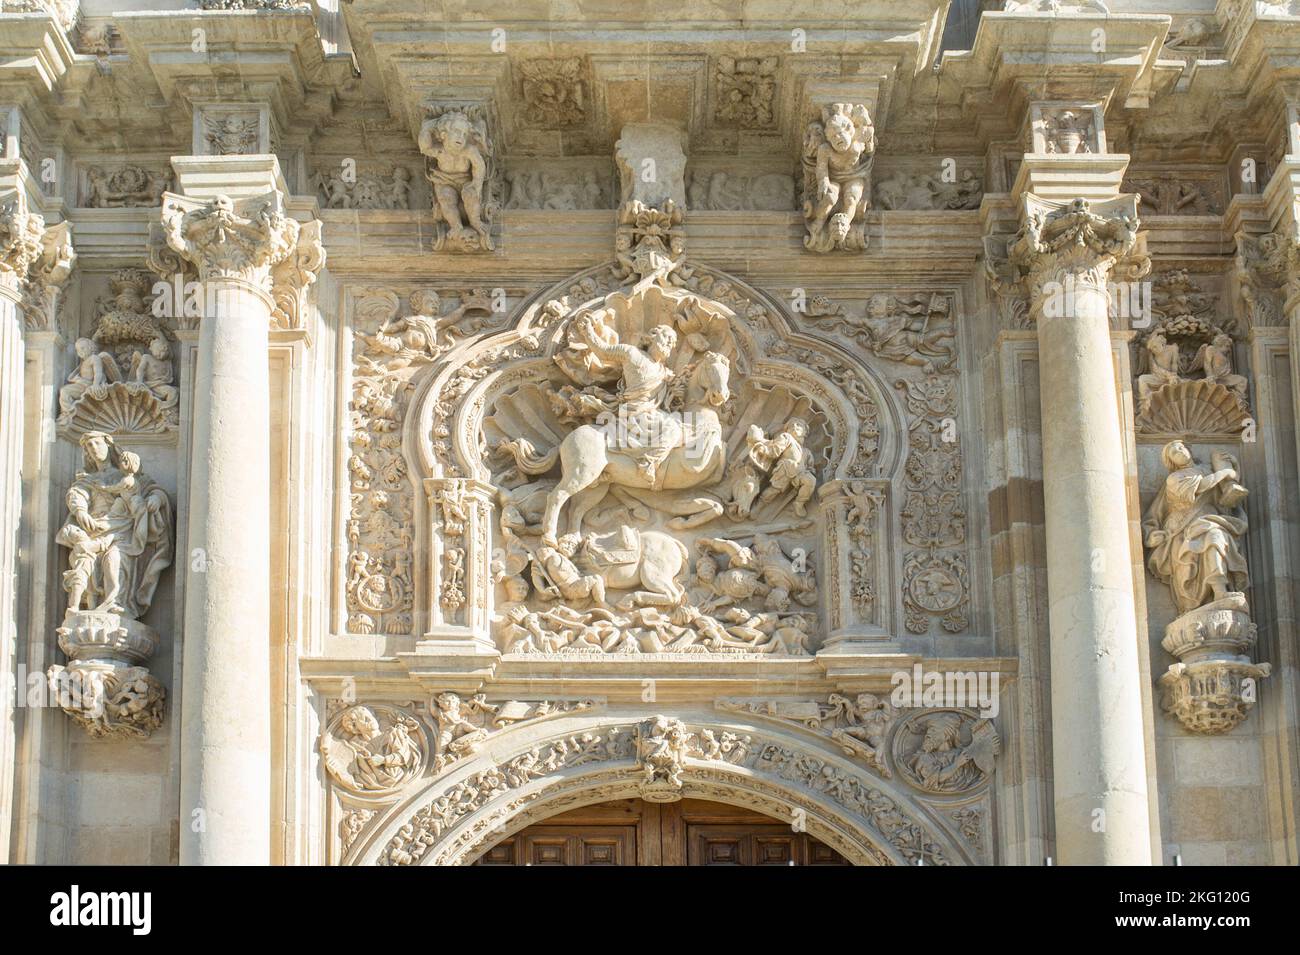 Saint James la sculpture de Moor-slayer. Couvent de San Marcos, Leon, Espagne. Bâtiment du XIIe siècle abritant désormais un hôtel de luxe parador Banque D'Images